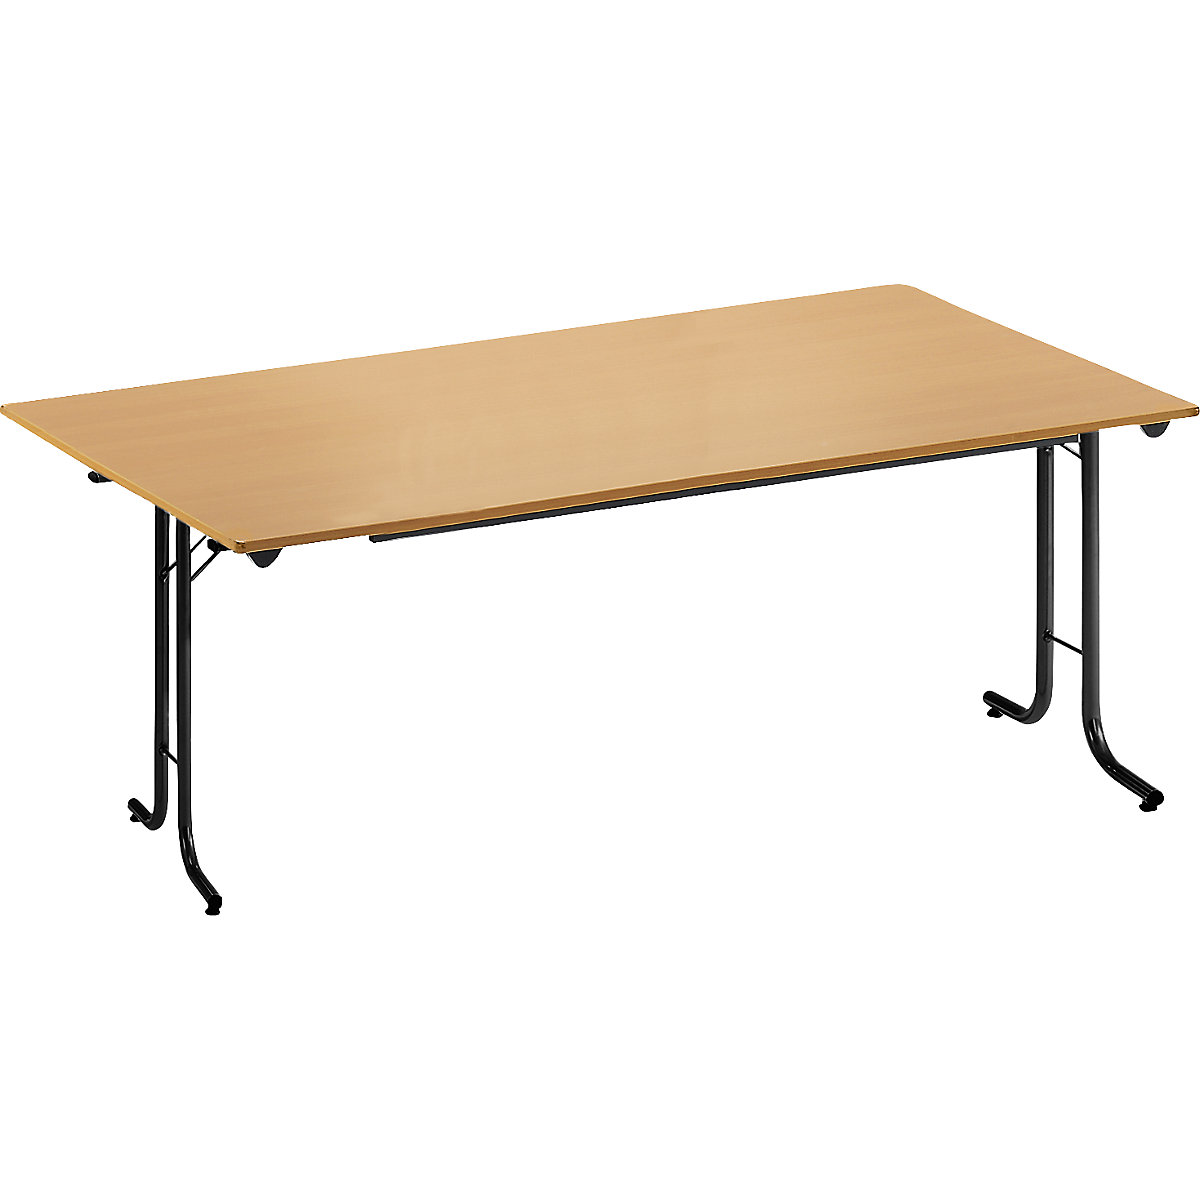 Sklápací stôl, so zaoblenými hranami, podstavec z kruhovej rúrky, tvar dosky obdĺžnikový, 1600 x 800 mm, podstavec čierna, doska vzor buk-8